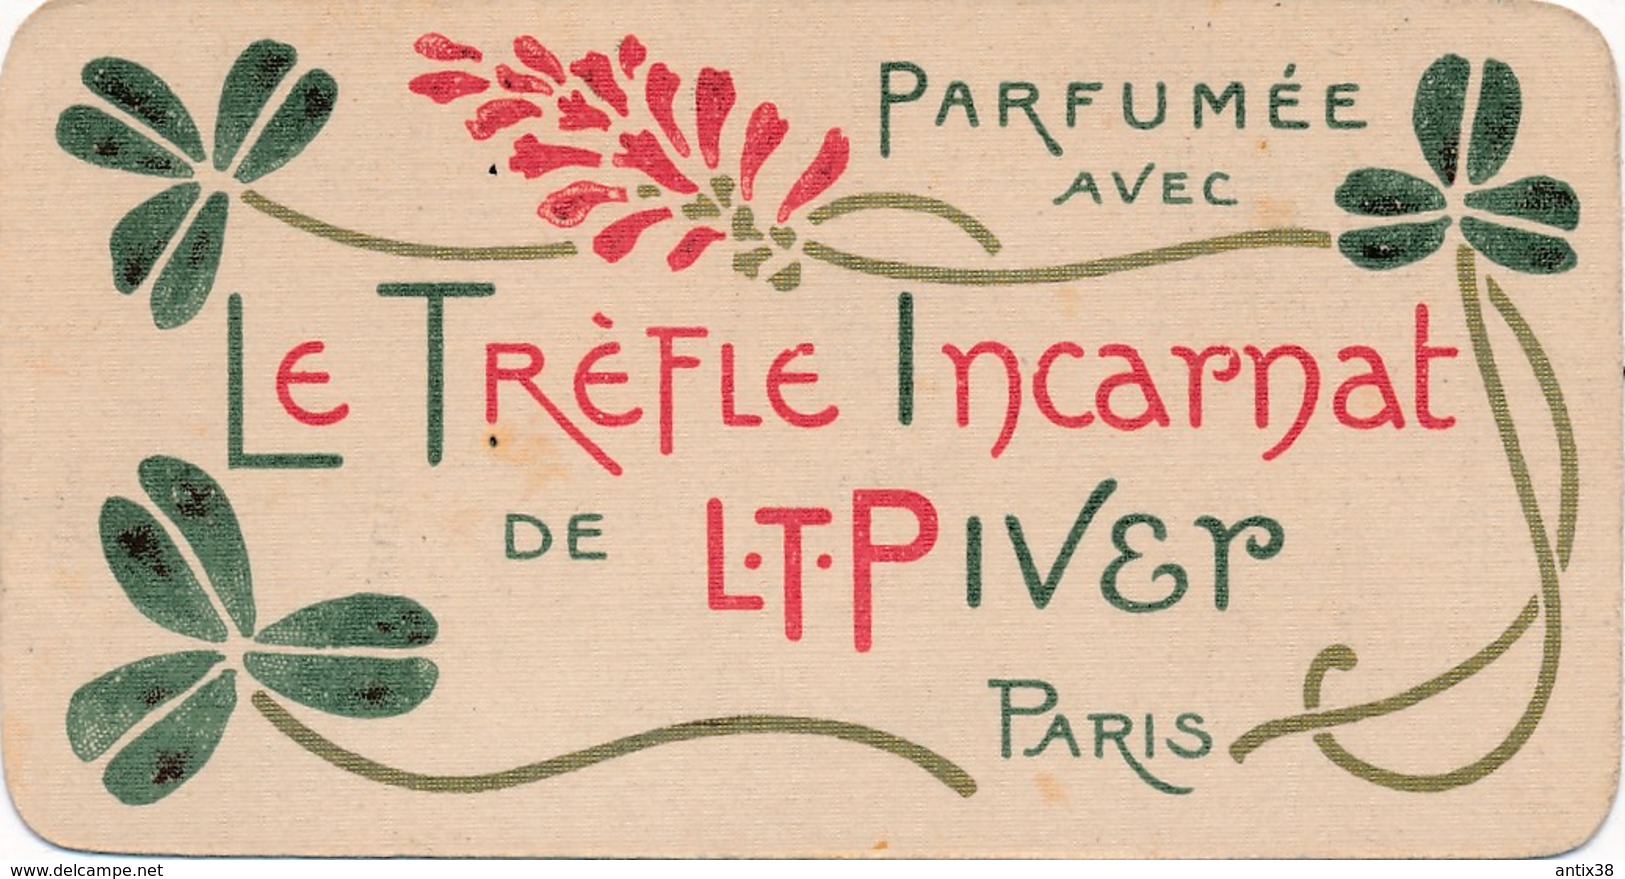 I112 - IMAGE - Carte Parfumée Le Trèfle Incarnat De L.T. Piver Paris - Calendrier Au Verso 1904 - Petit Format : 1901-20